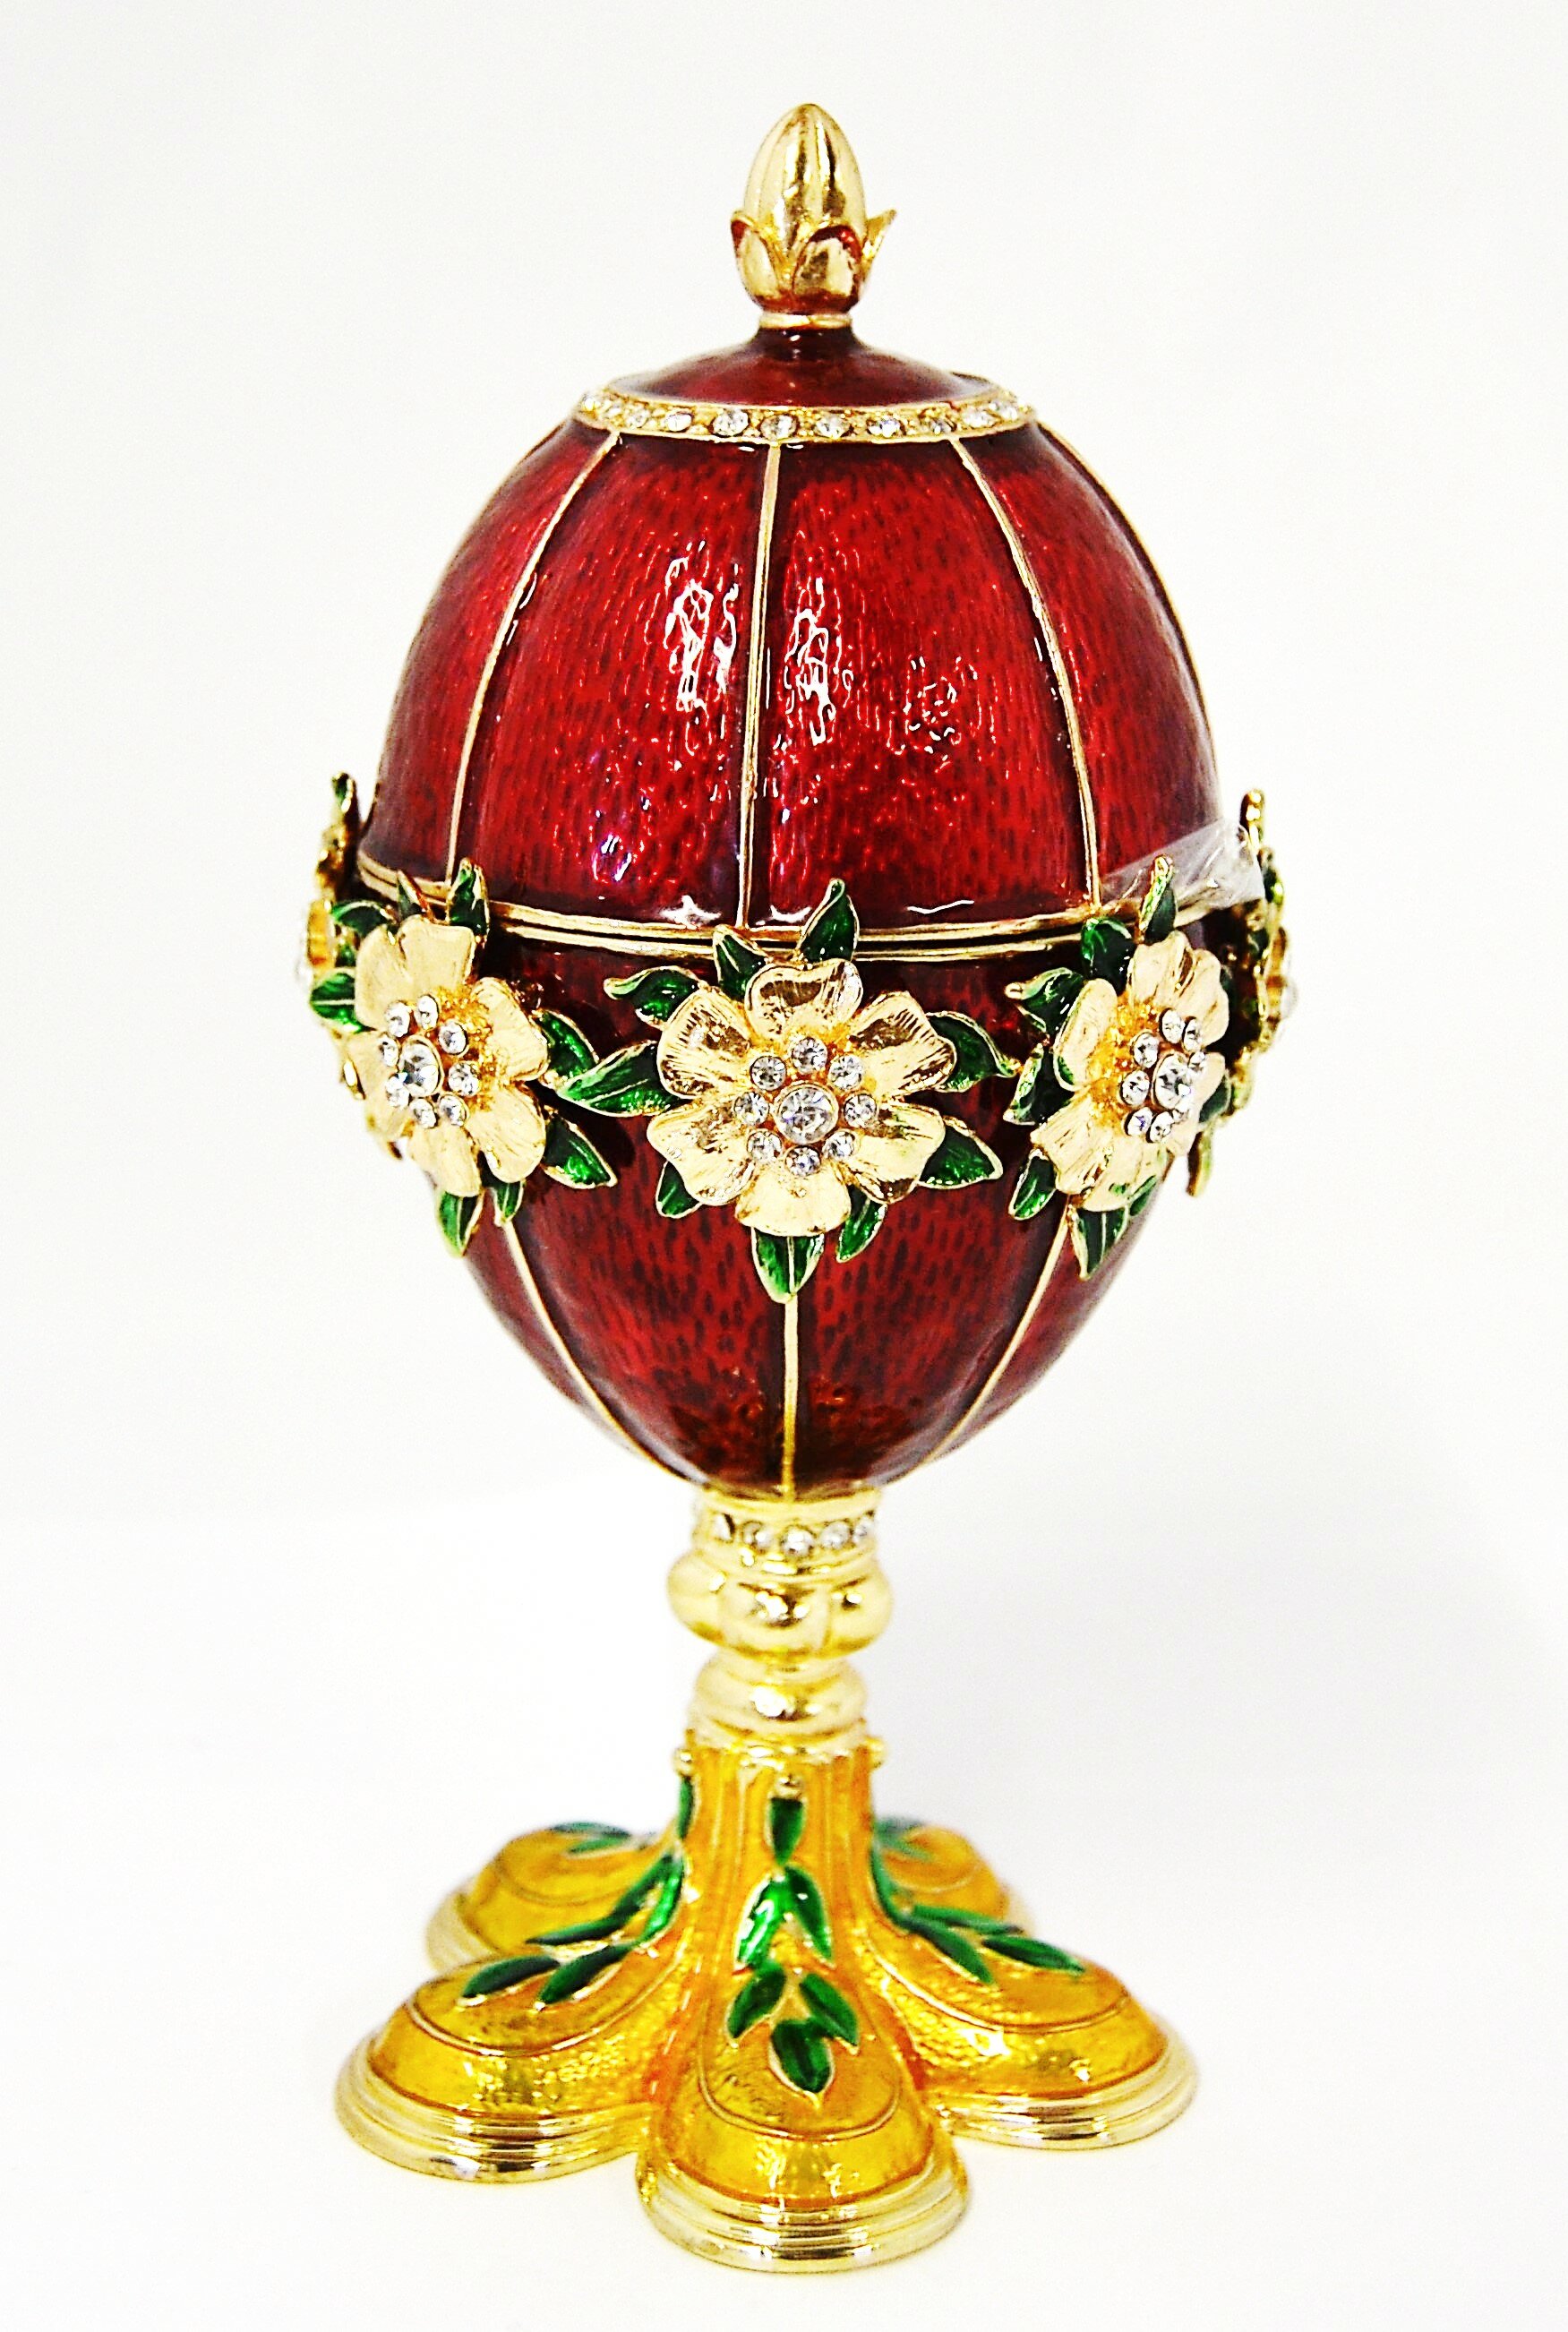 Faberge Style Egg Box